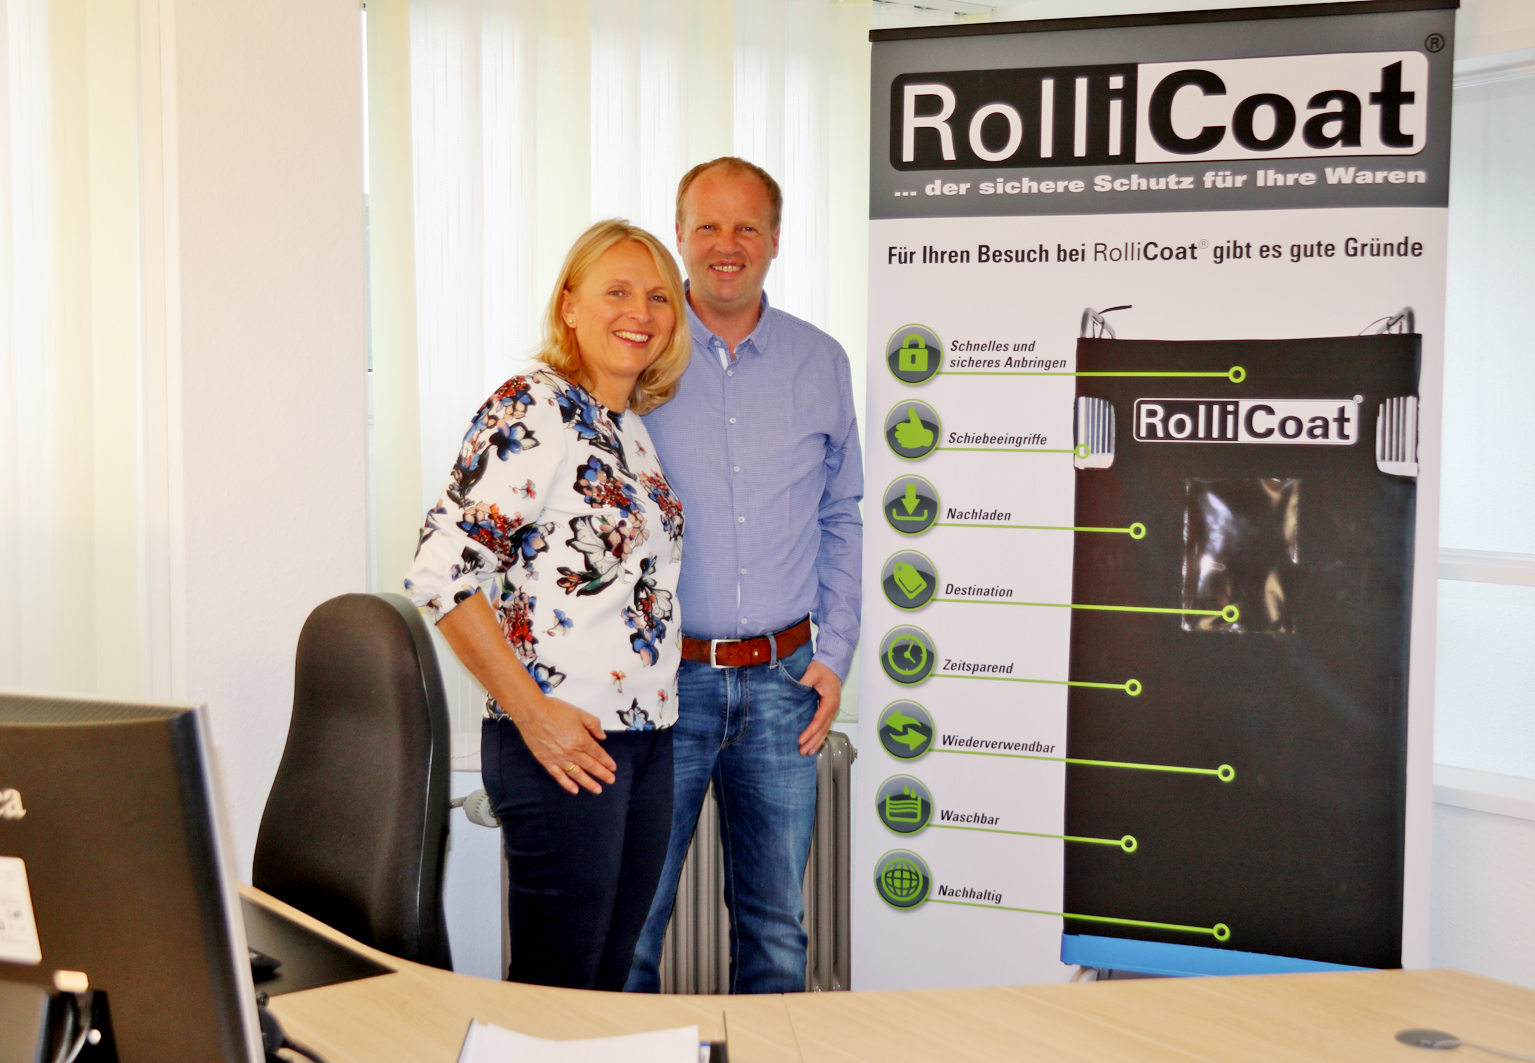 RolliCoat GmbH / Tausendmal verwendbare Ummantelung für Roll-Container